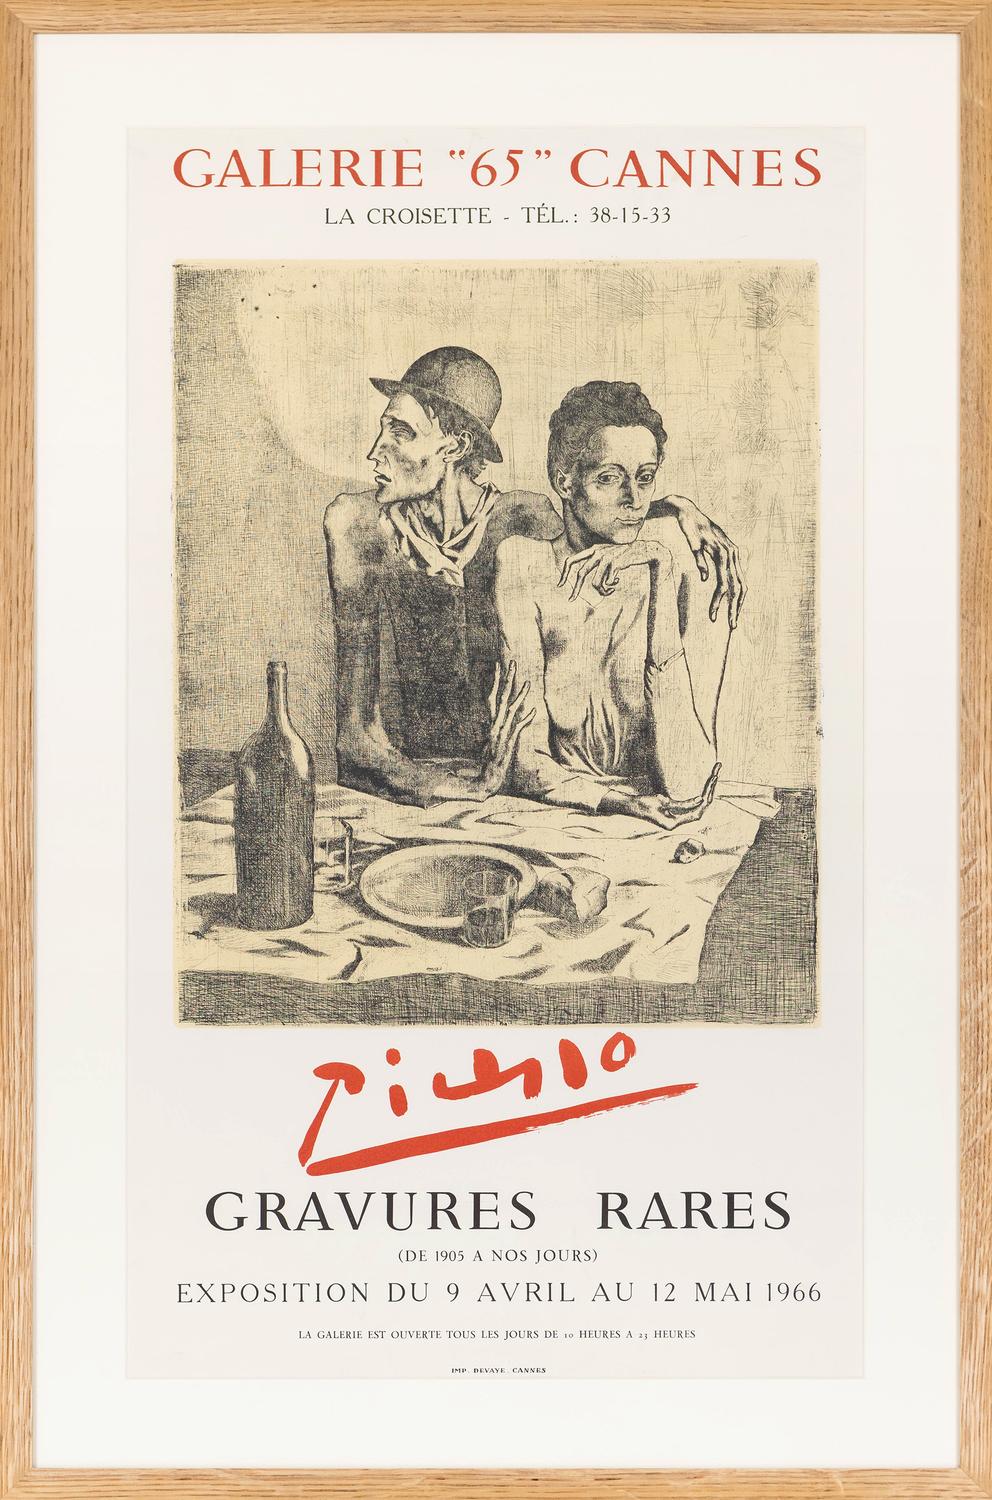 Gravures Rares, 1966